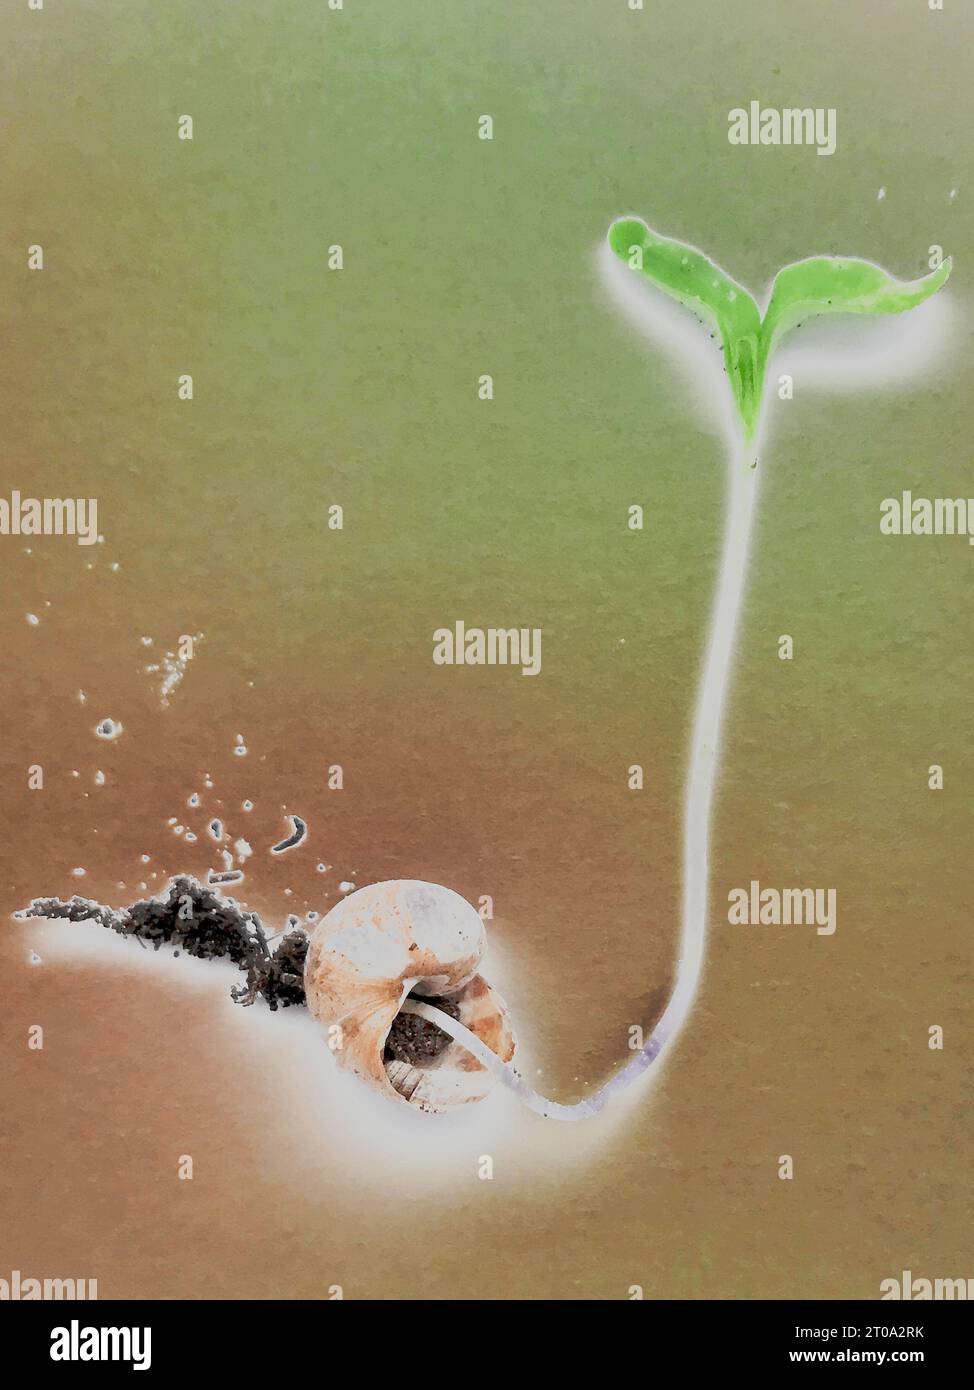 Concept art : une pousse de plante poussant à partir d'une coquille d'escargot, illustrant l'épissage de gènes, les hybrides animal-plante, la persistance de la vie, la vie hors de la mort. Banque D'Images